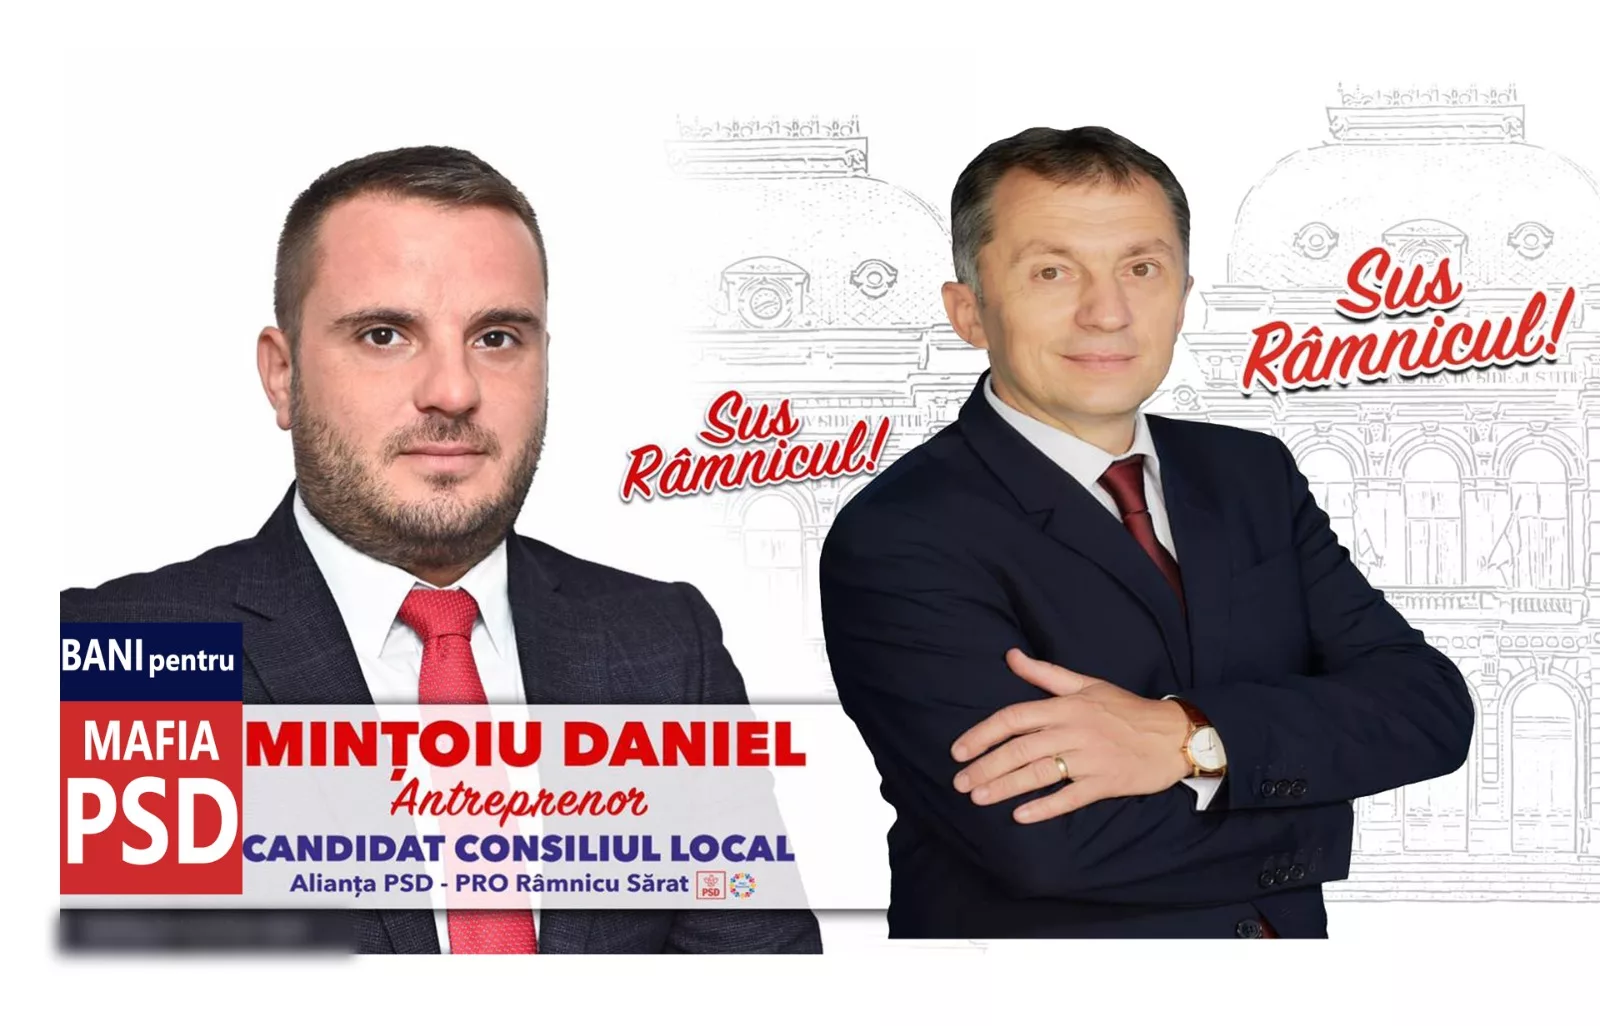 Contracte plătite din BANI PUBLICI de primăria PSD-istului Sorin Cîrjan către un membru fidel de partid